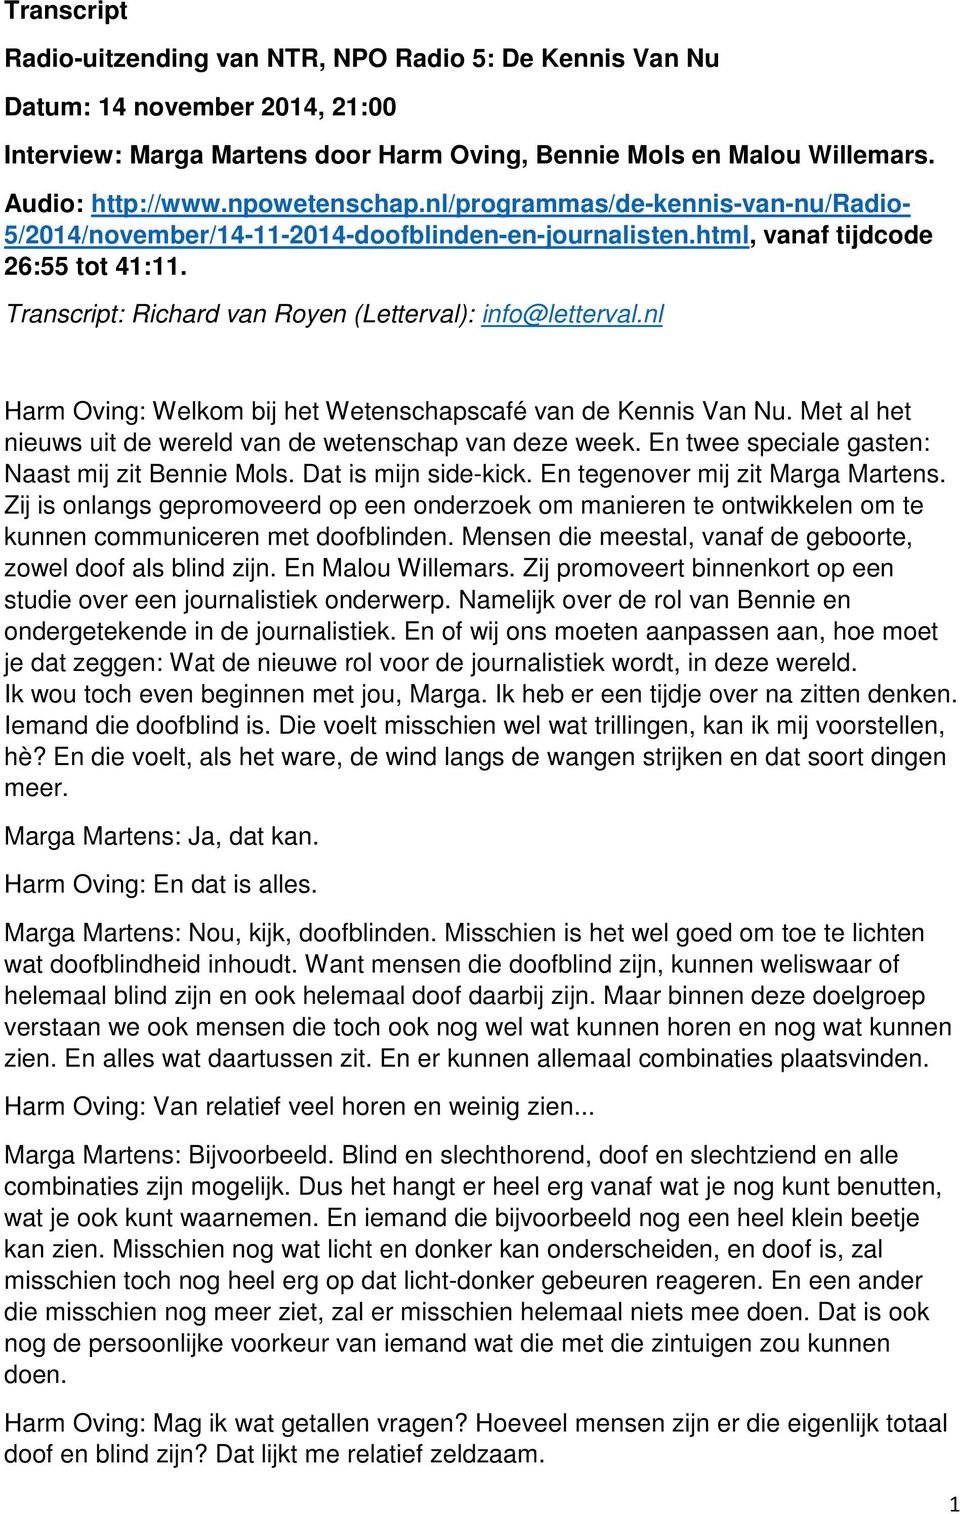 Transcript: Richard van Royen (Letterval): info@letterval.nl Harm Oving: Welkom bij het Wetenschapscafé van de Kennis Van Nu. Met al het nieuws uit de wereld van de wetenschap van deze week.